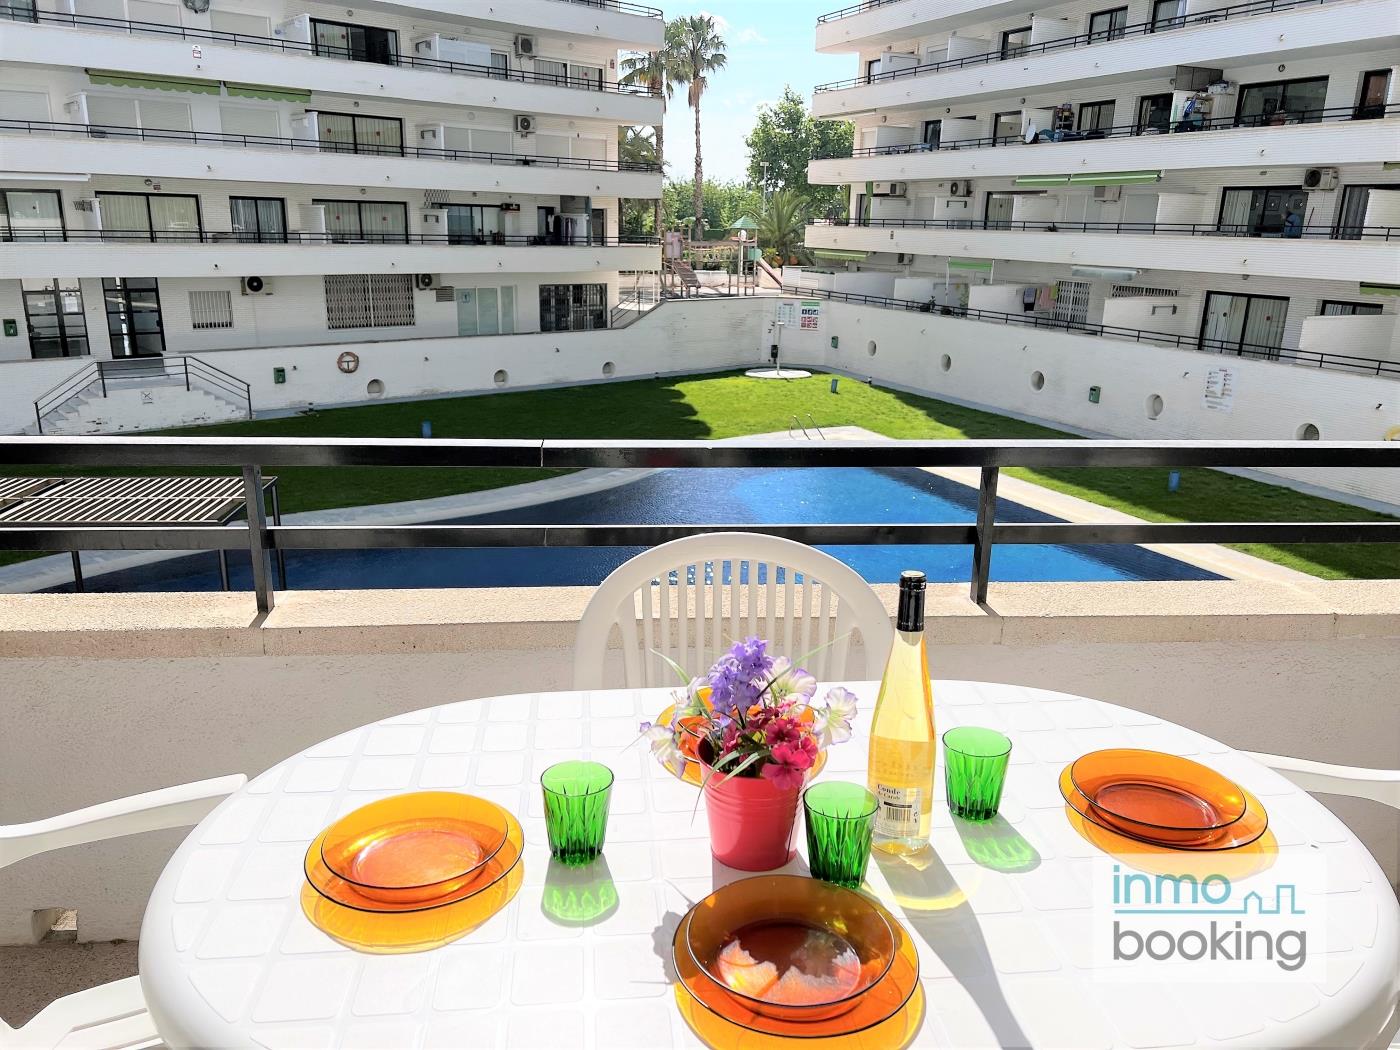 InmoBooking Cannes Apartments, bien ubicado y con piscina en salou